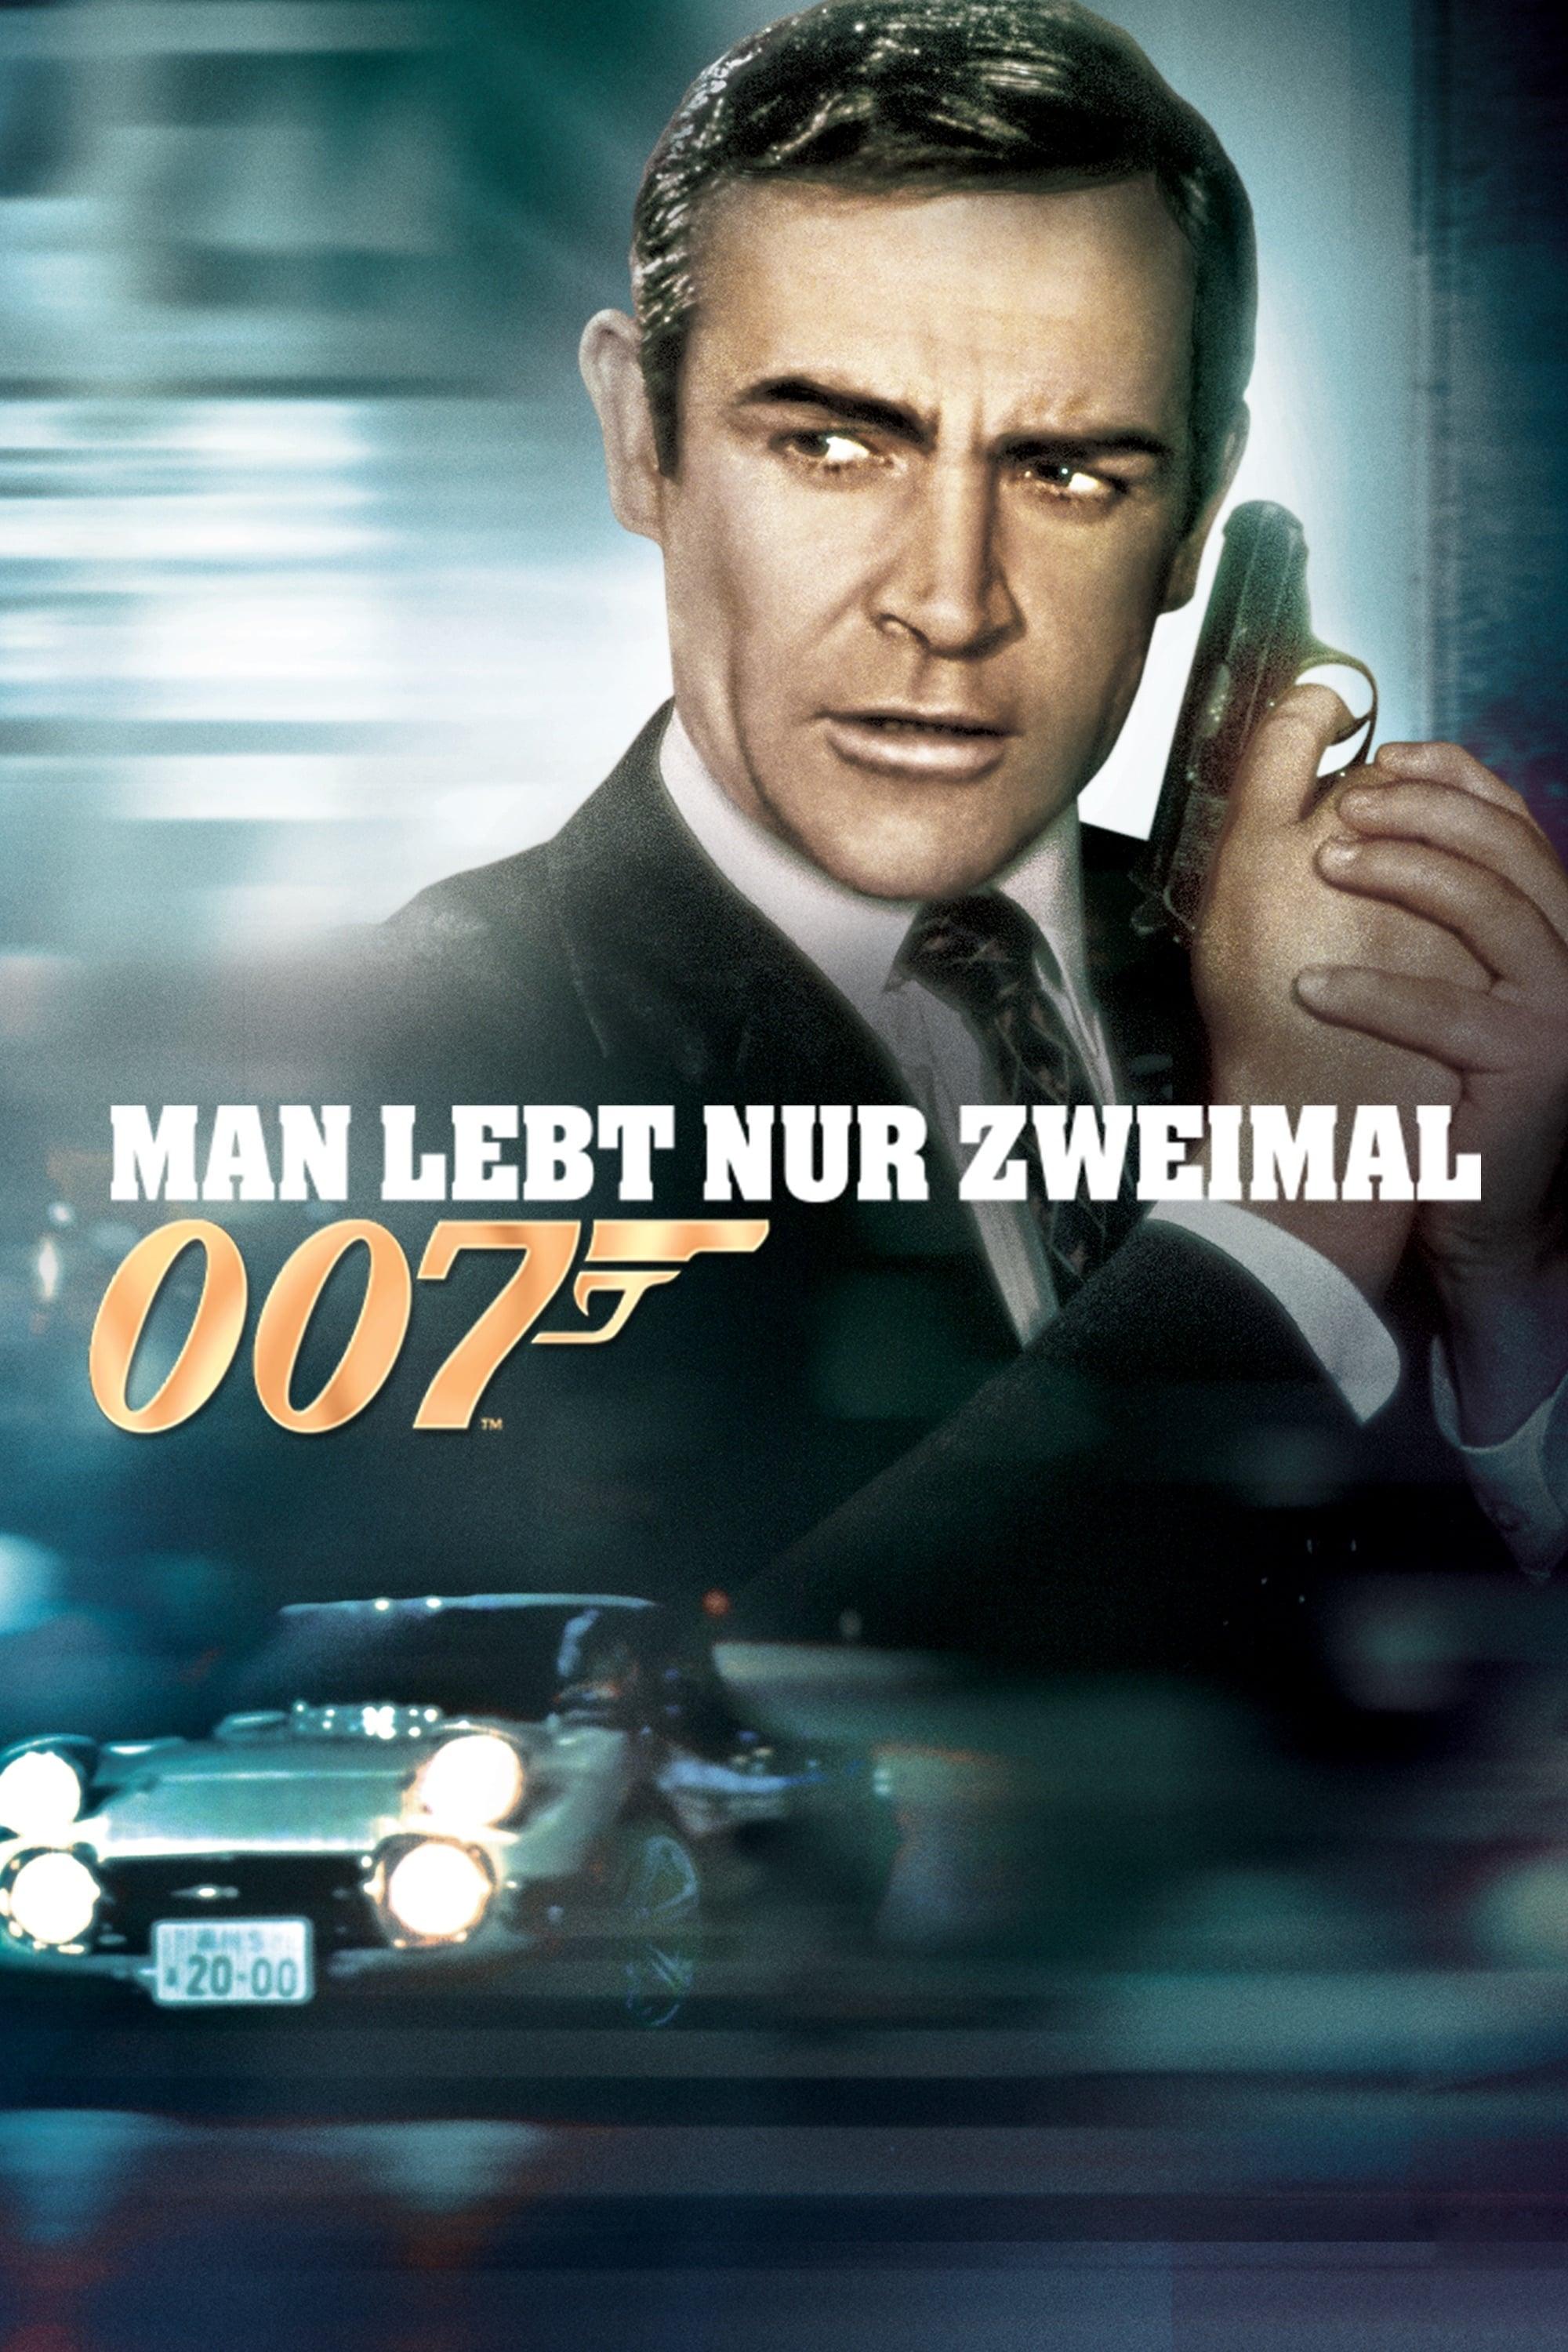 James Bond 007 - Man lebt nur zweimal poster